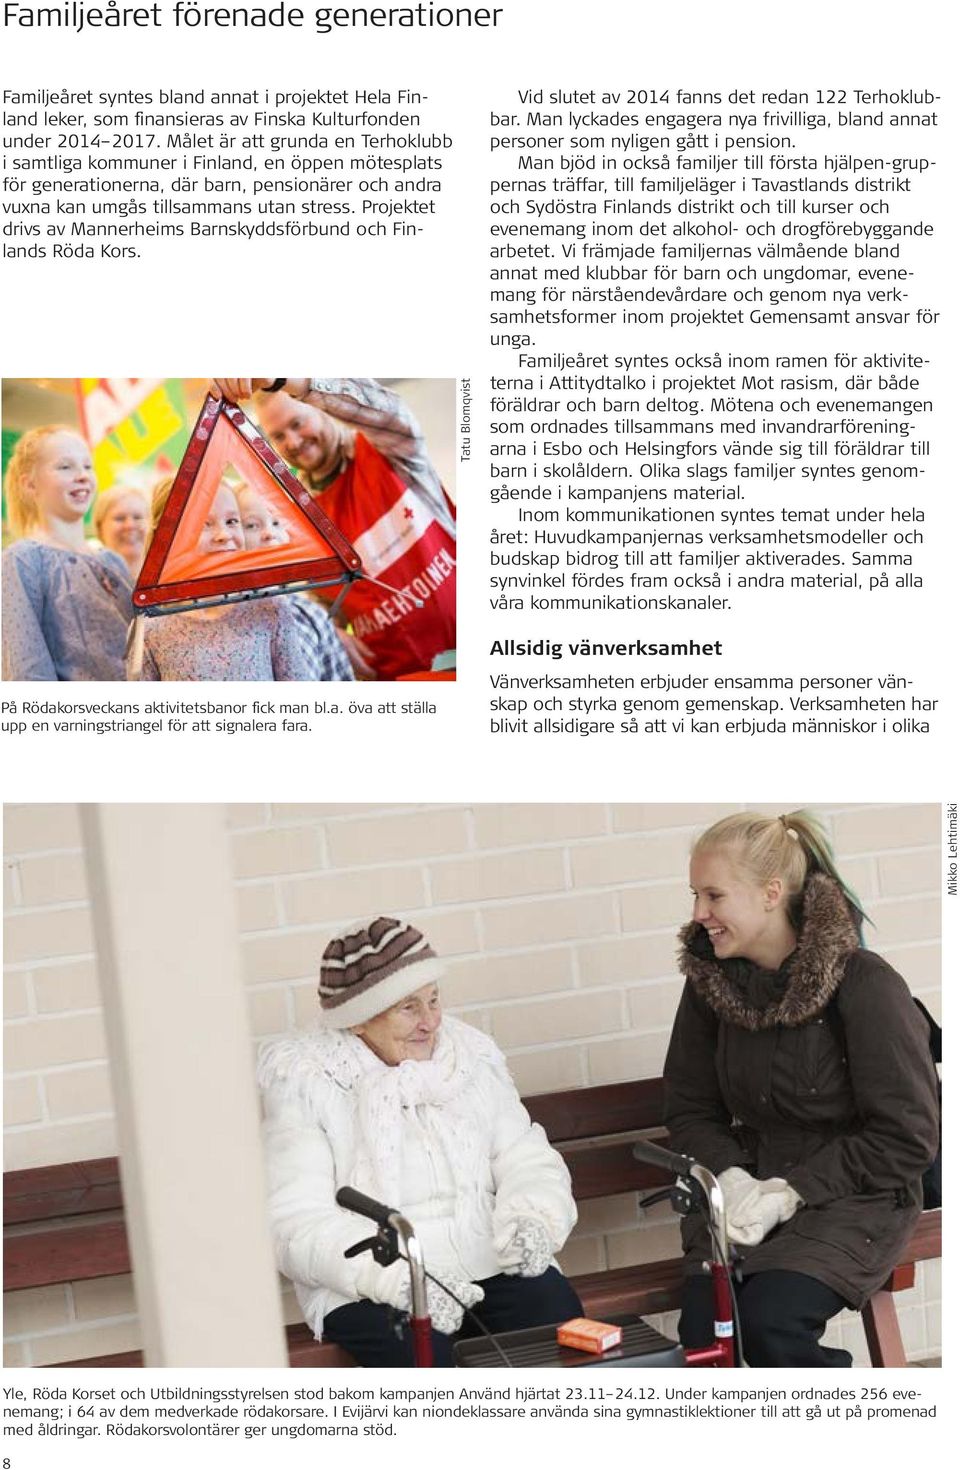 Projektet drivs av Mannerheims Barnskyddsförbund och Finlands Röda Kors. På Rödakorsveckans aktivitetsbanor fick man bl.a. öva att ställa upp en varningstriangel för att signalera fara.